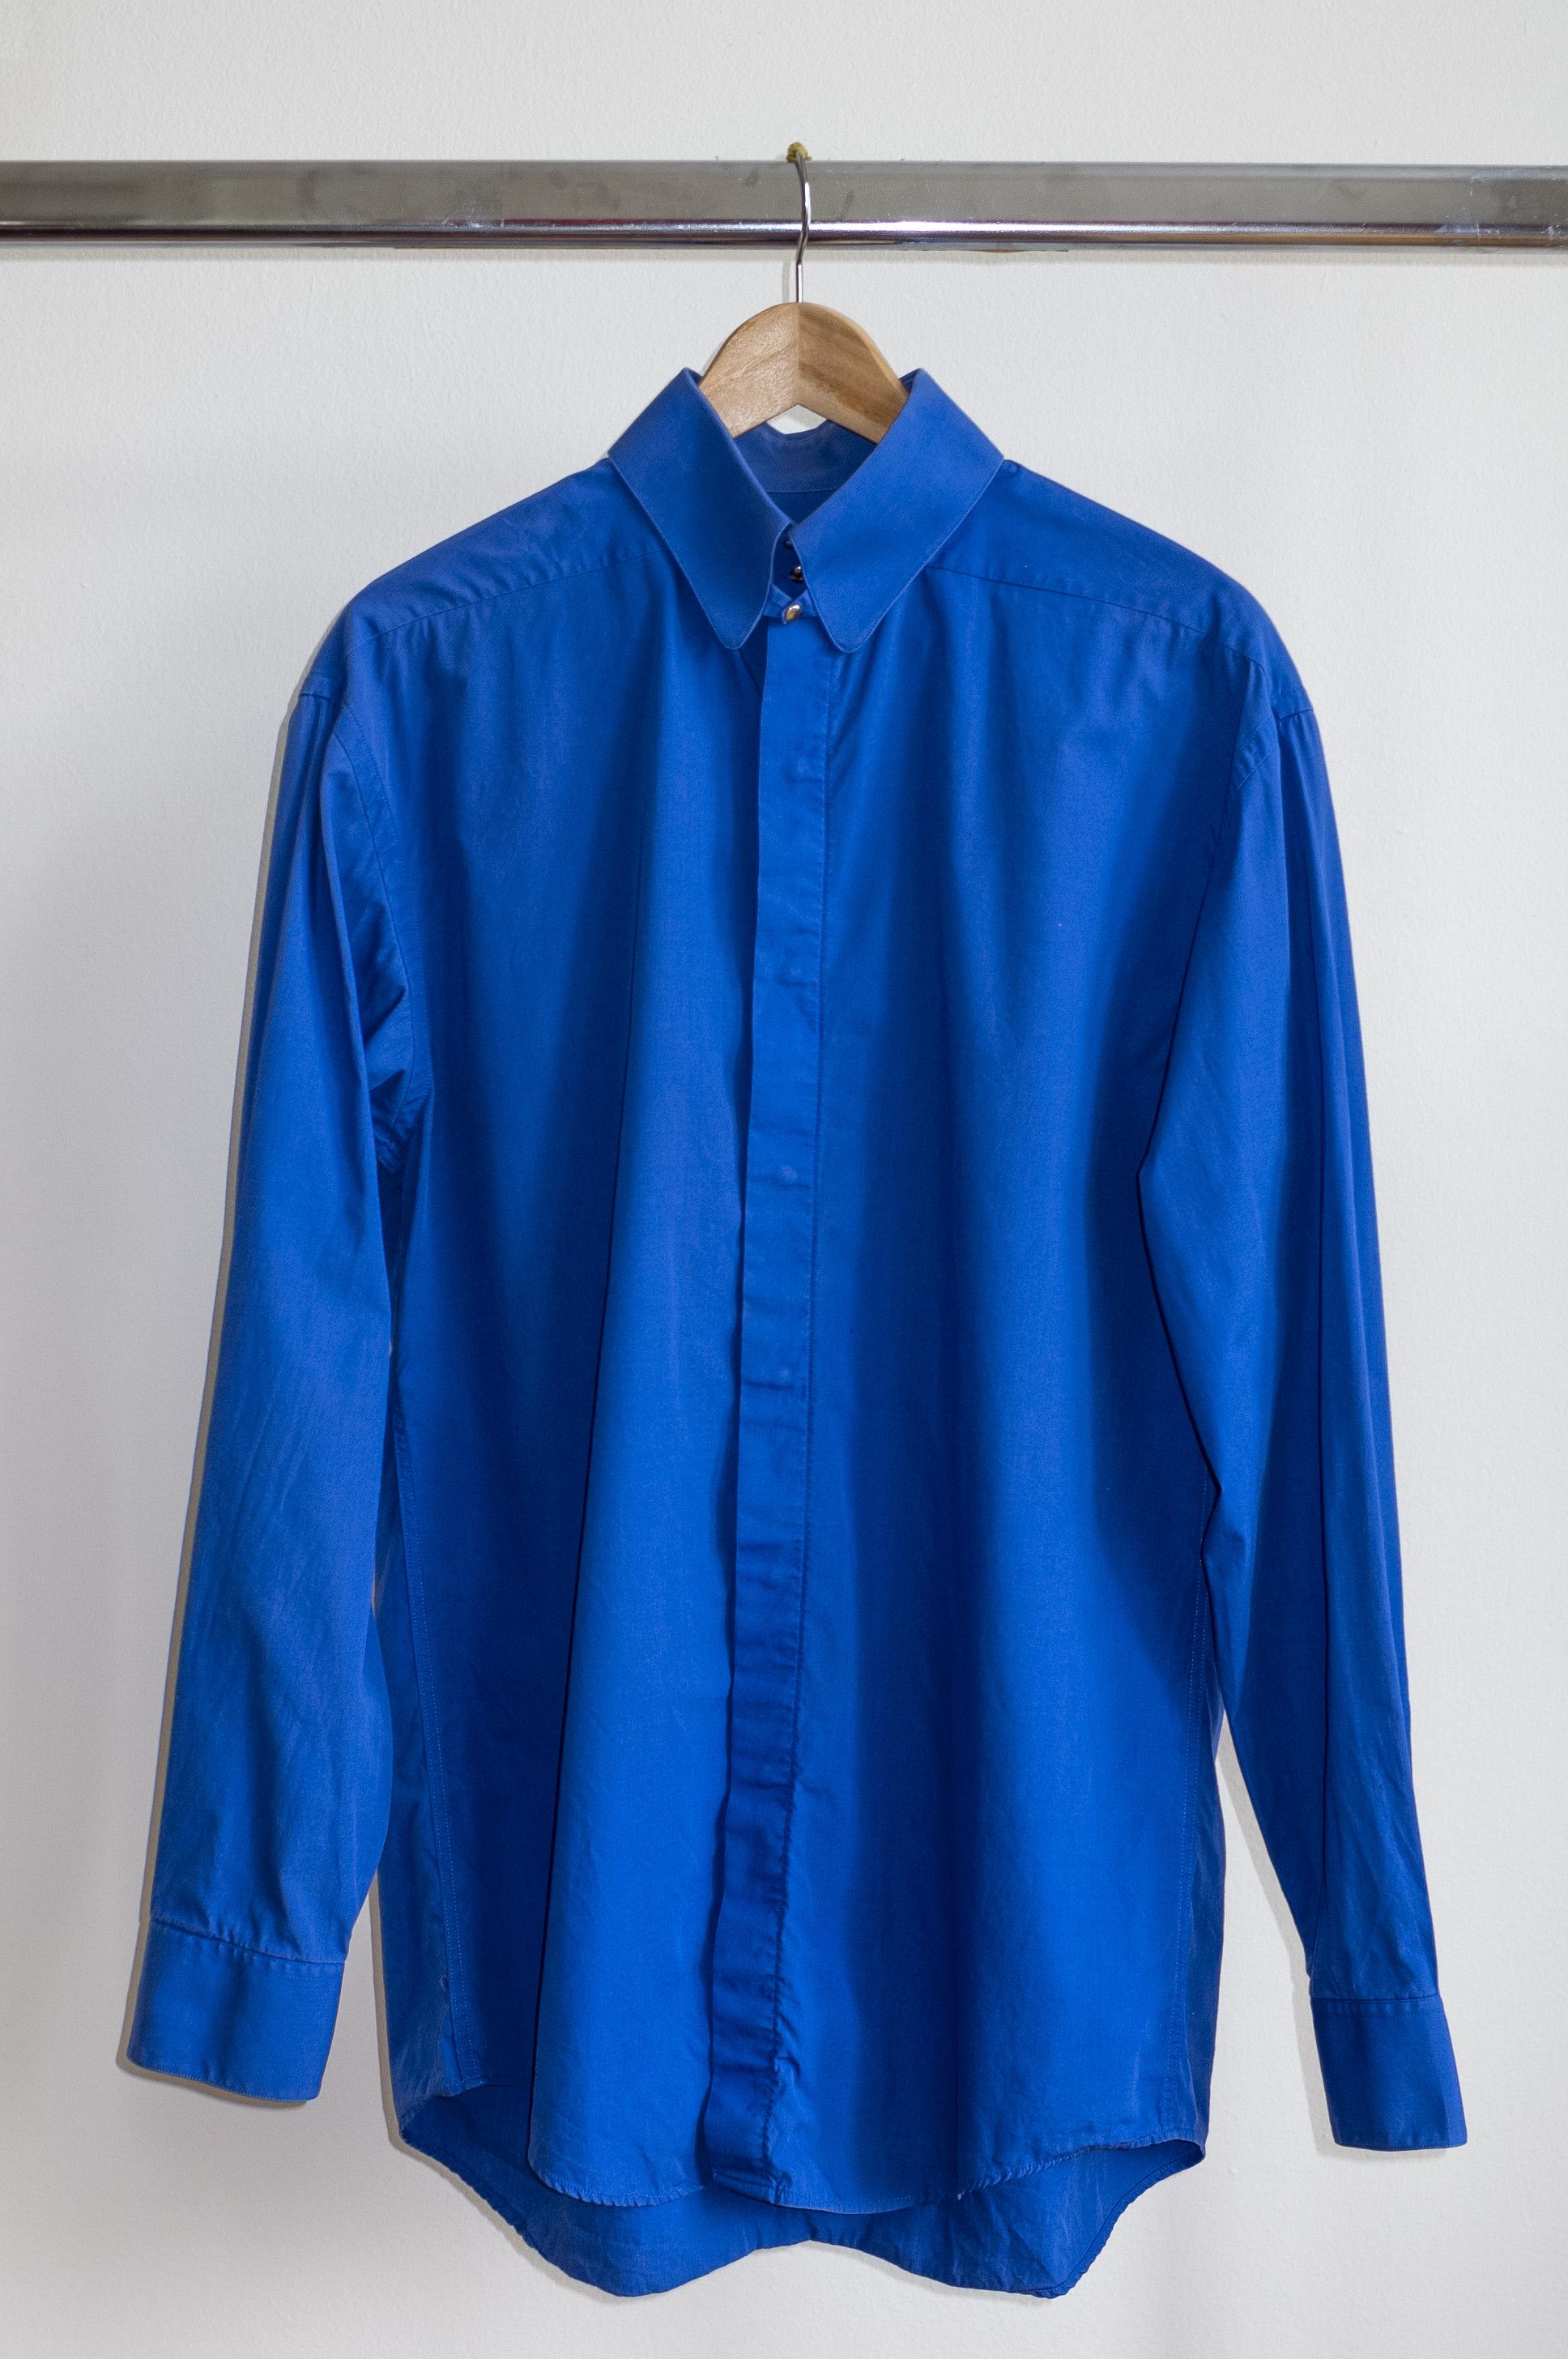 Thierry Mugler Royal Blue Snap-up Thierry Mugler Shirt | Grailed